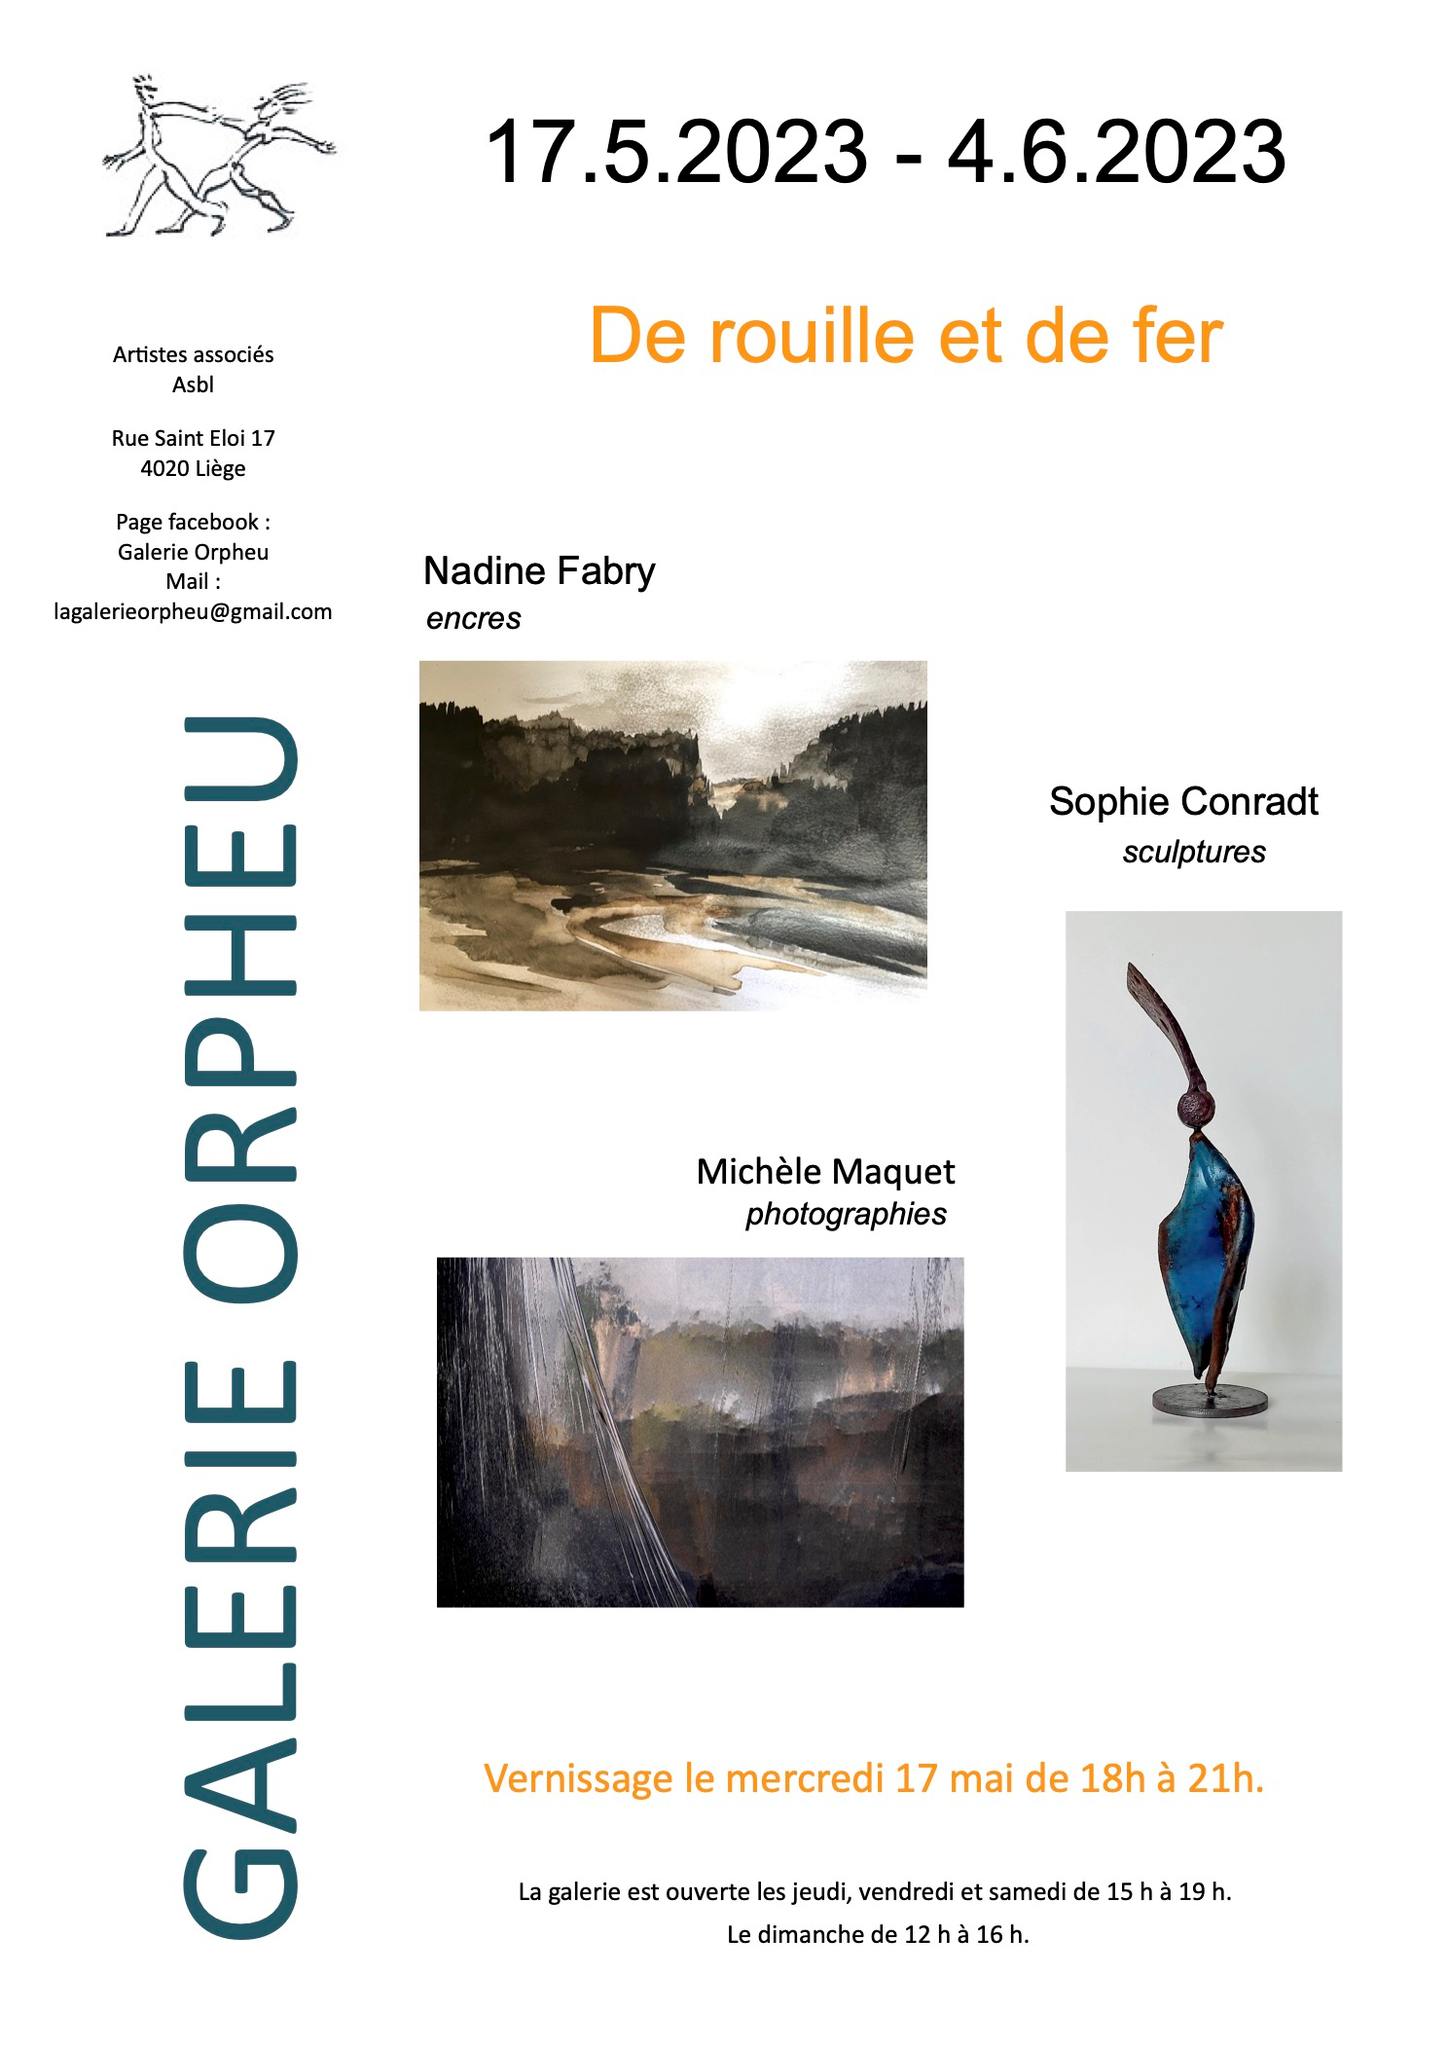 La galerie Orpheu expose Nadine Fabry Michèle Maquet et Sophie Conradt